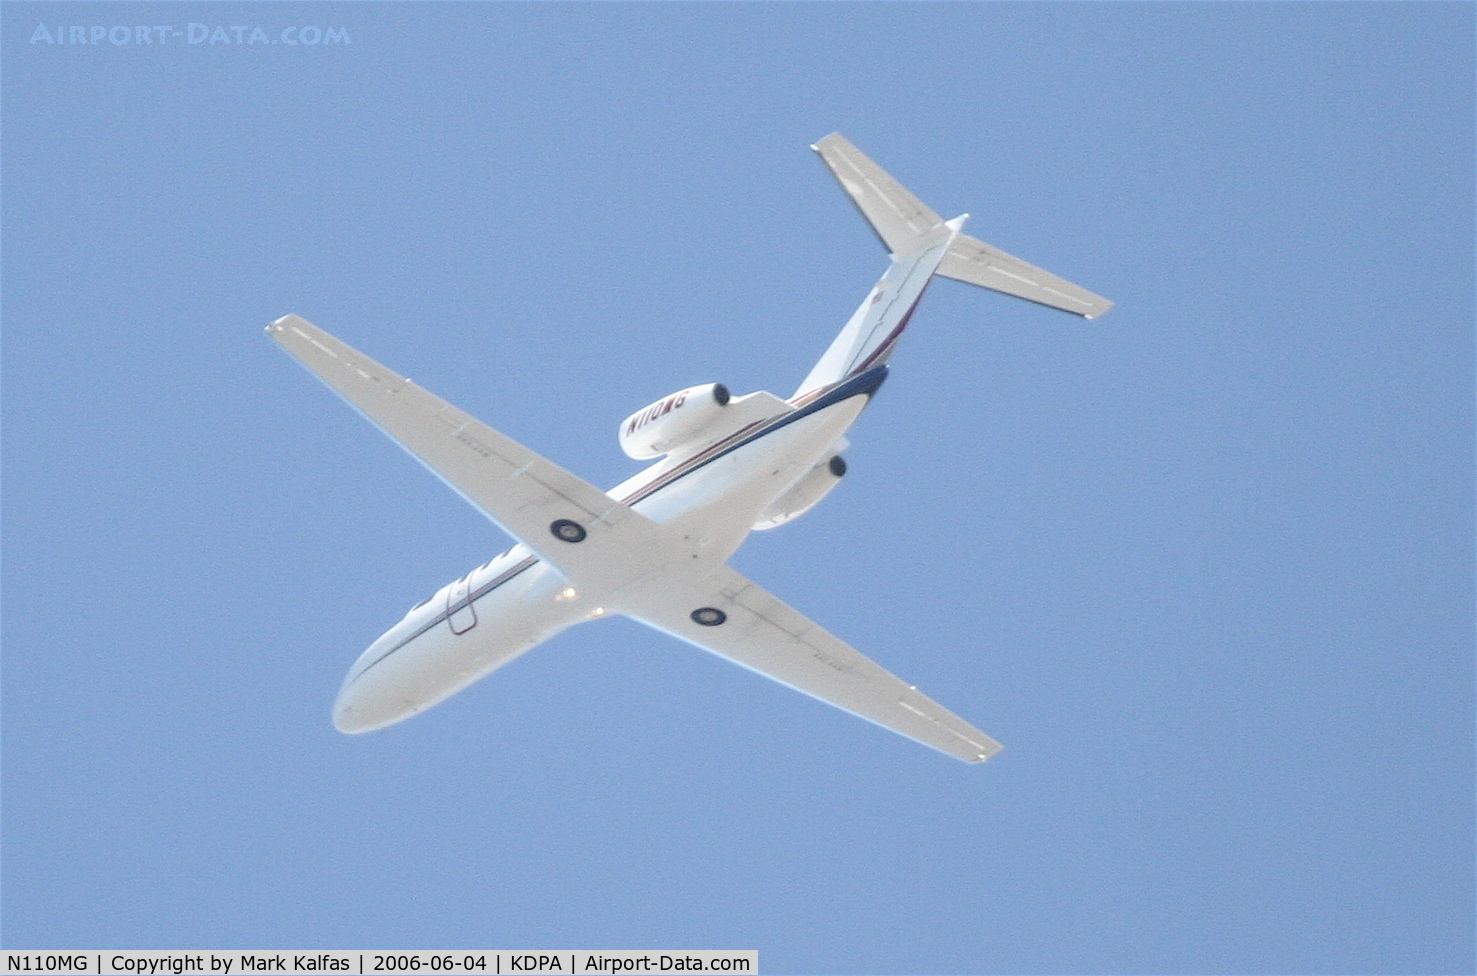 N110MG, 2000 Israel Aircraft Industries IAI-1125A Astra SPX C/N 122, Teton Jet Inc. Cessna 525B CitationJet CJ3, N110MG departing KLAX 25L.